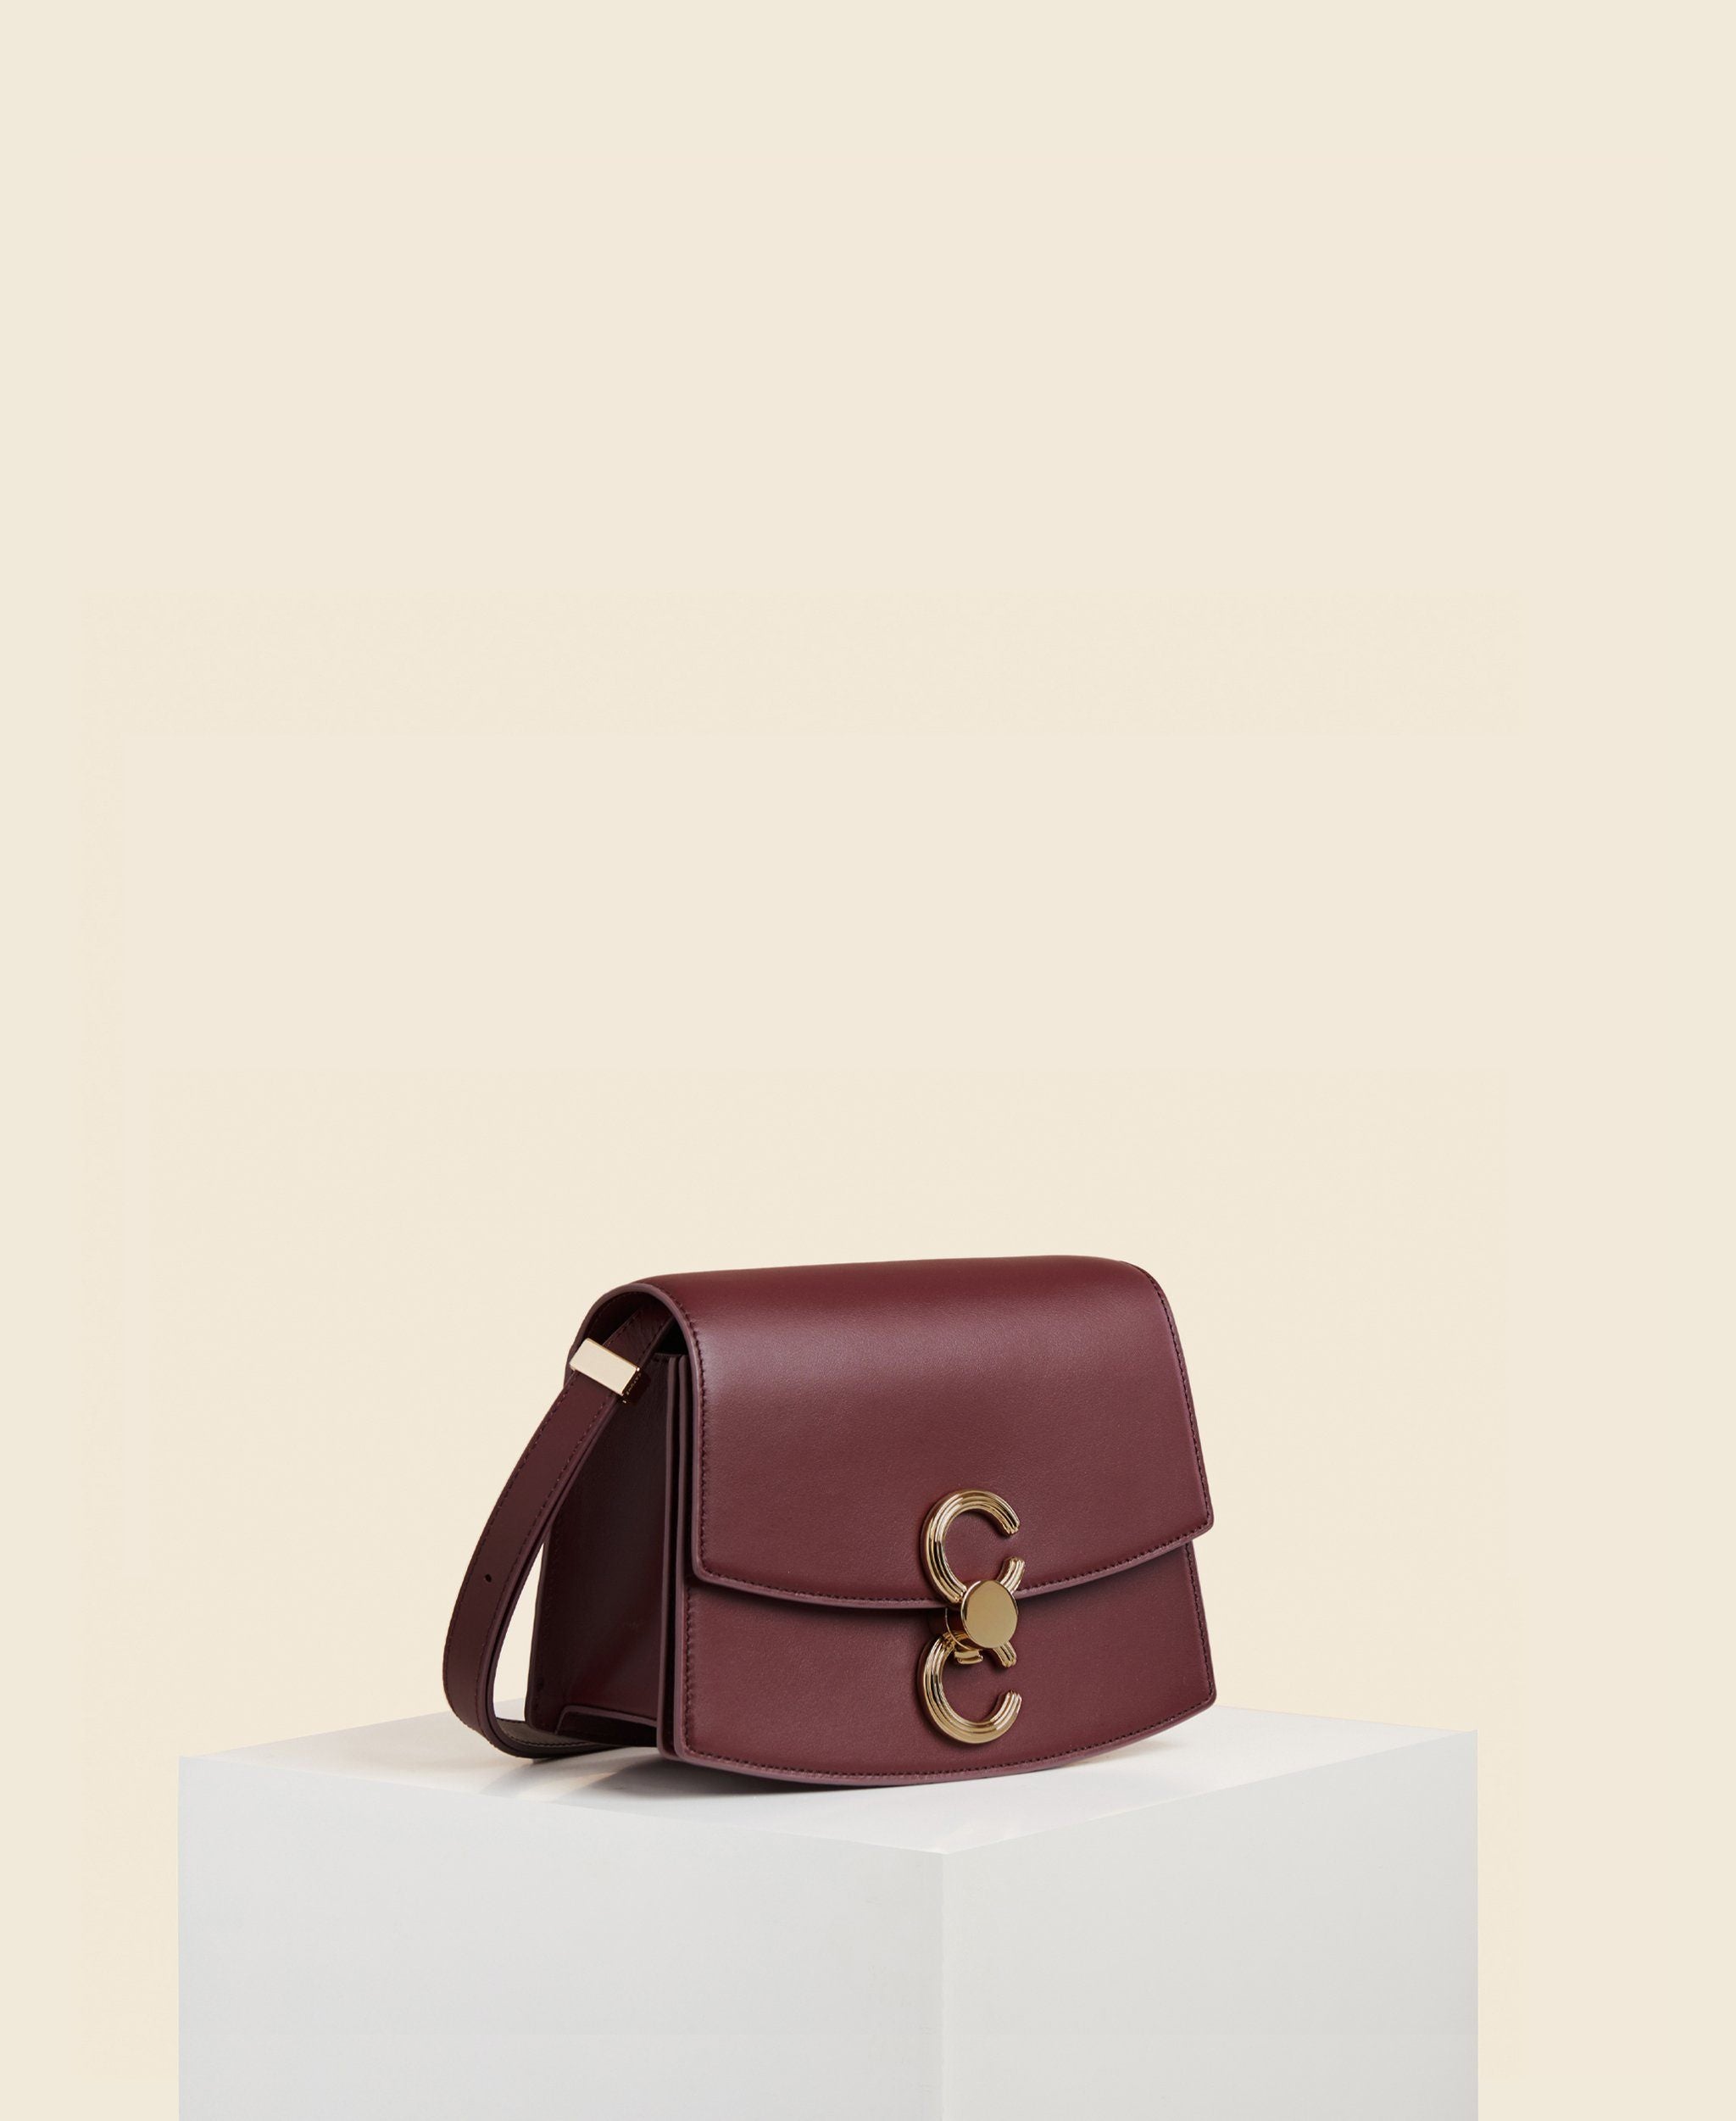 50代女性の普段使いにおすすめなカジュアルに使えるハイブランドバッグは、カフネのSMALL PENDULUM